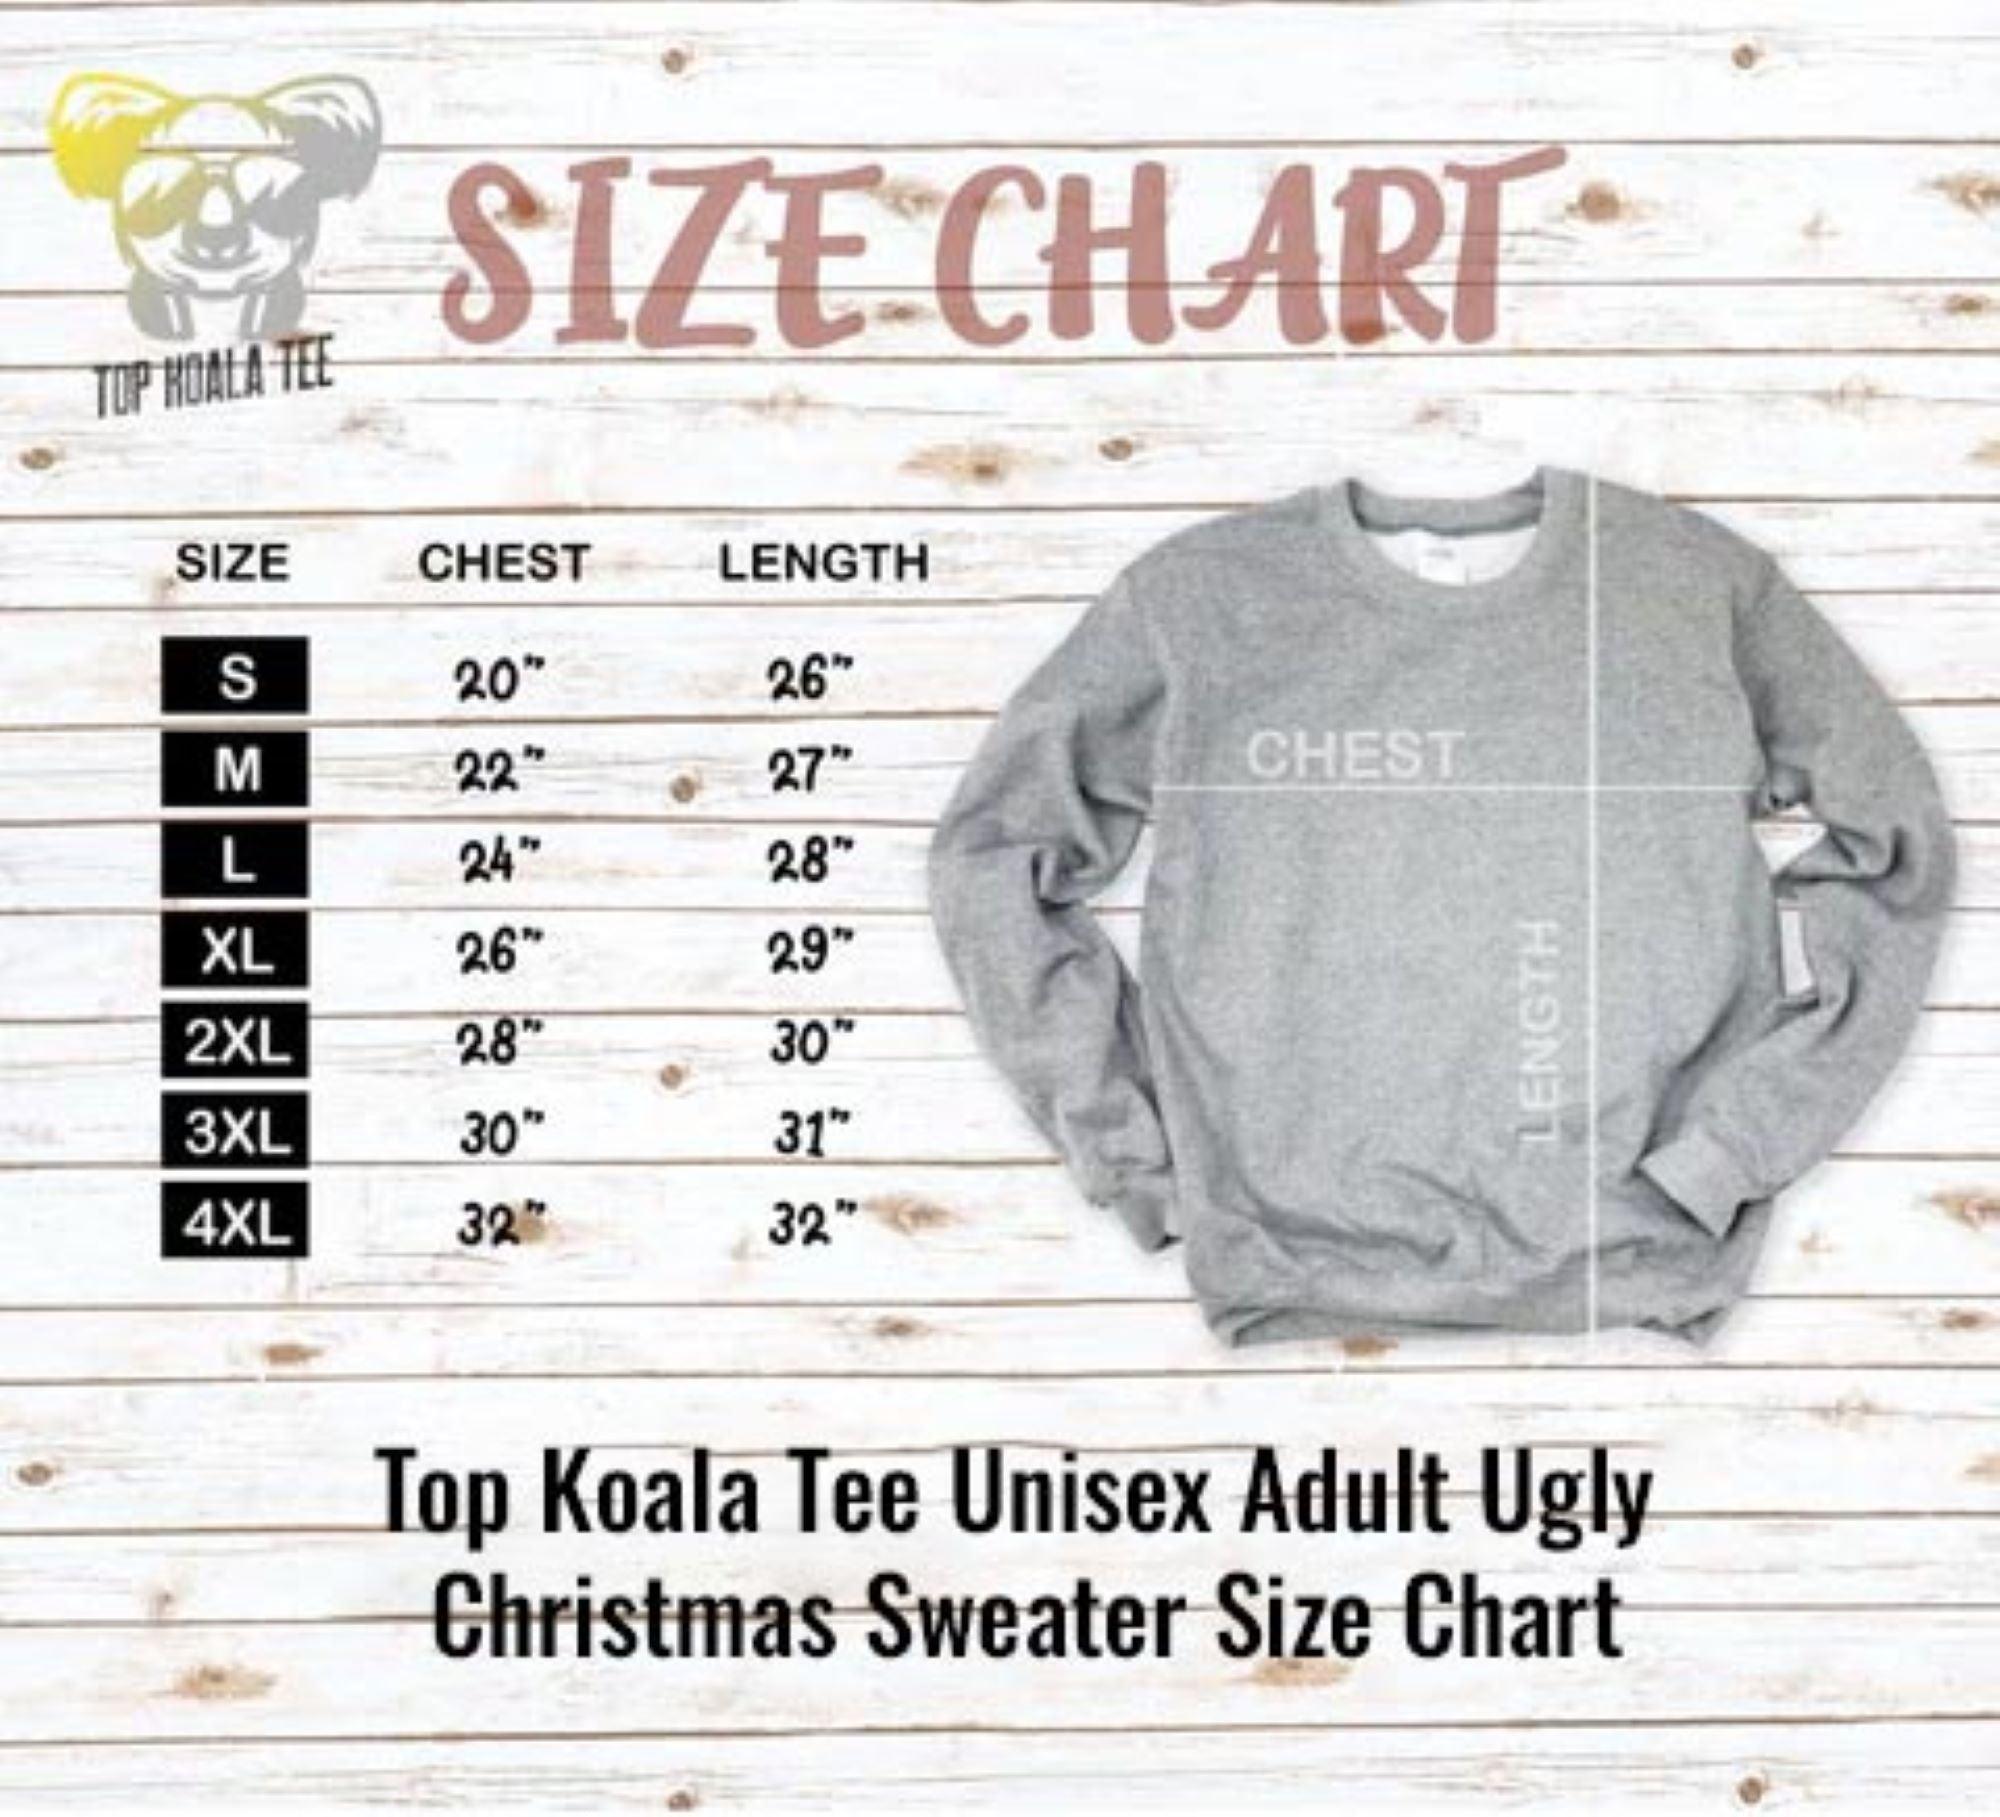 No lift no Gift Unisex Ugly Christmas Sweatshirt - TopKoalaTee